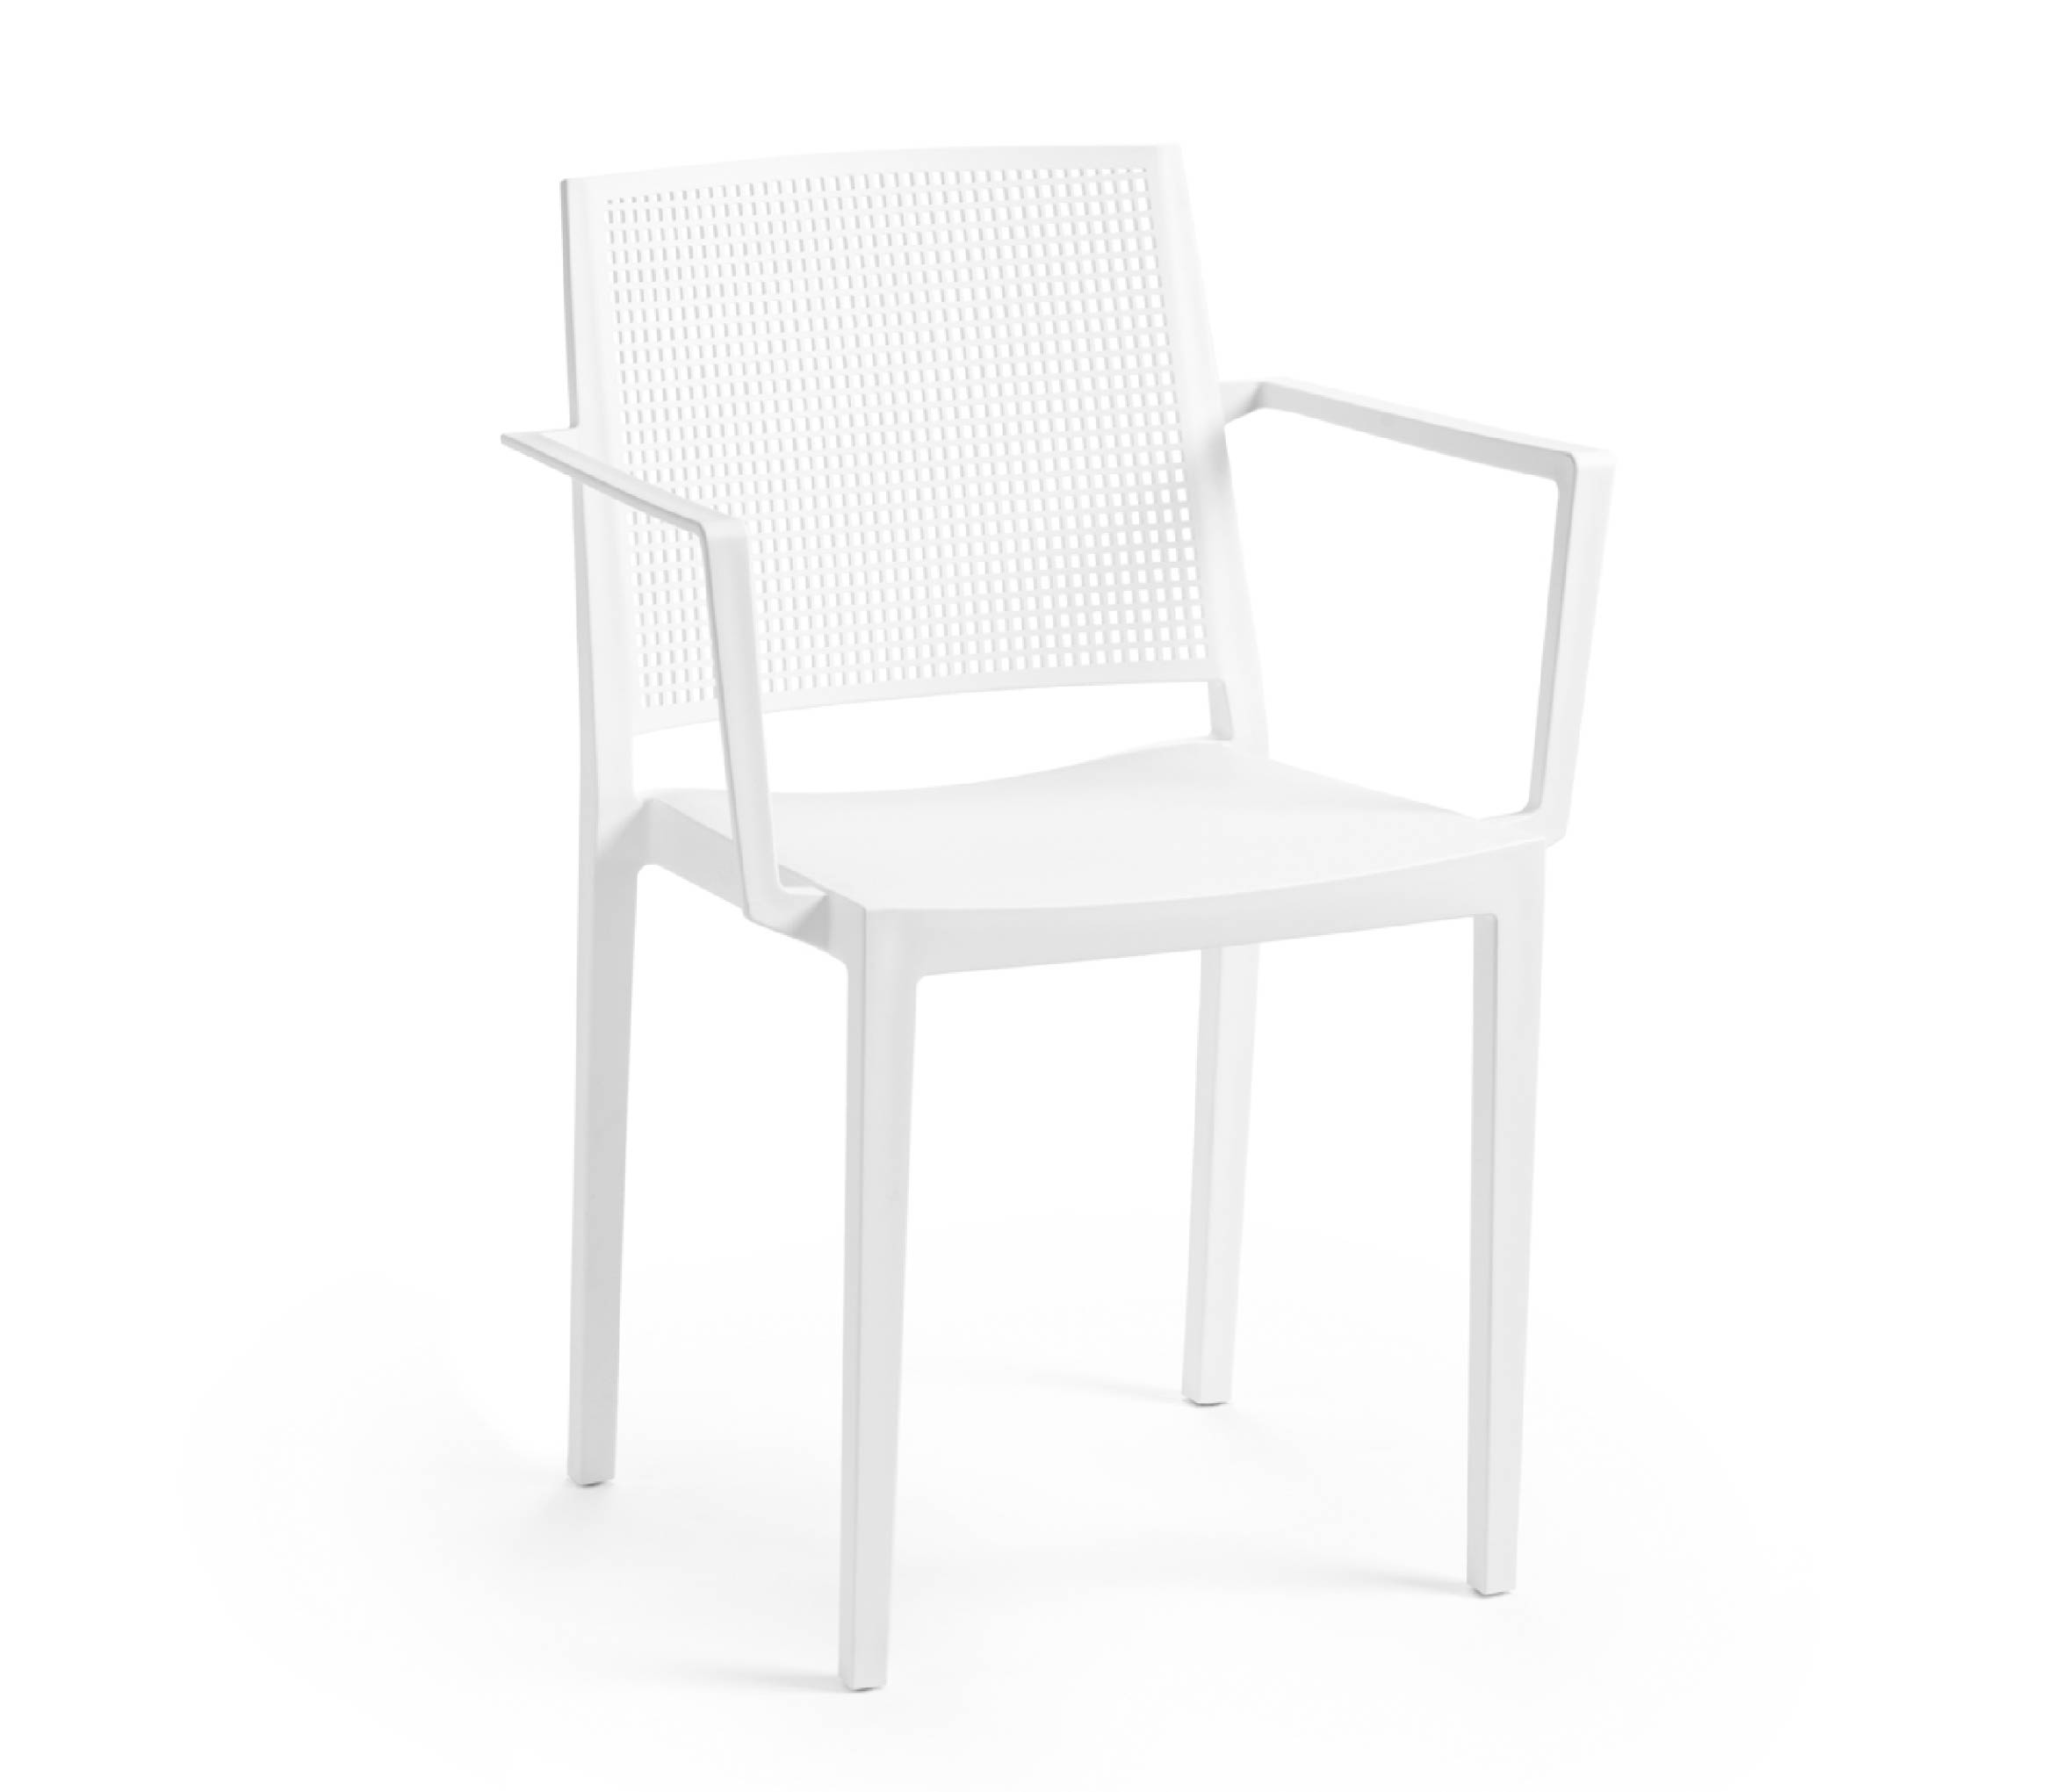 TENSAI_FURNITURE_GRID_ARMCHAIR_WHITE_100 plastic chair